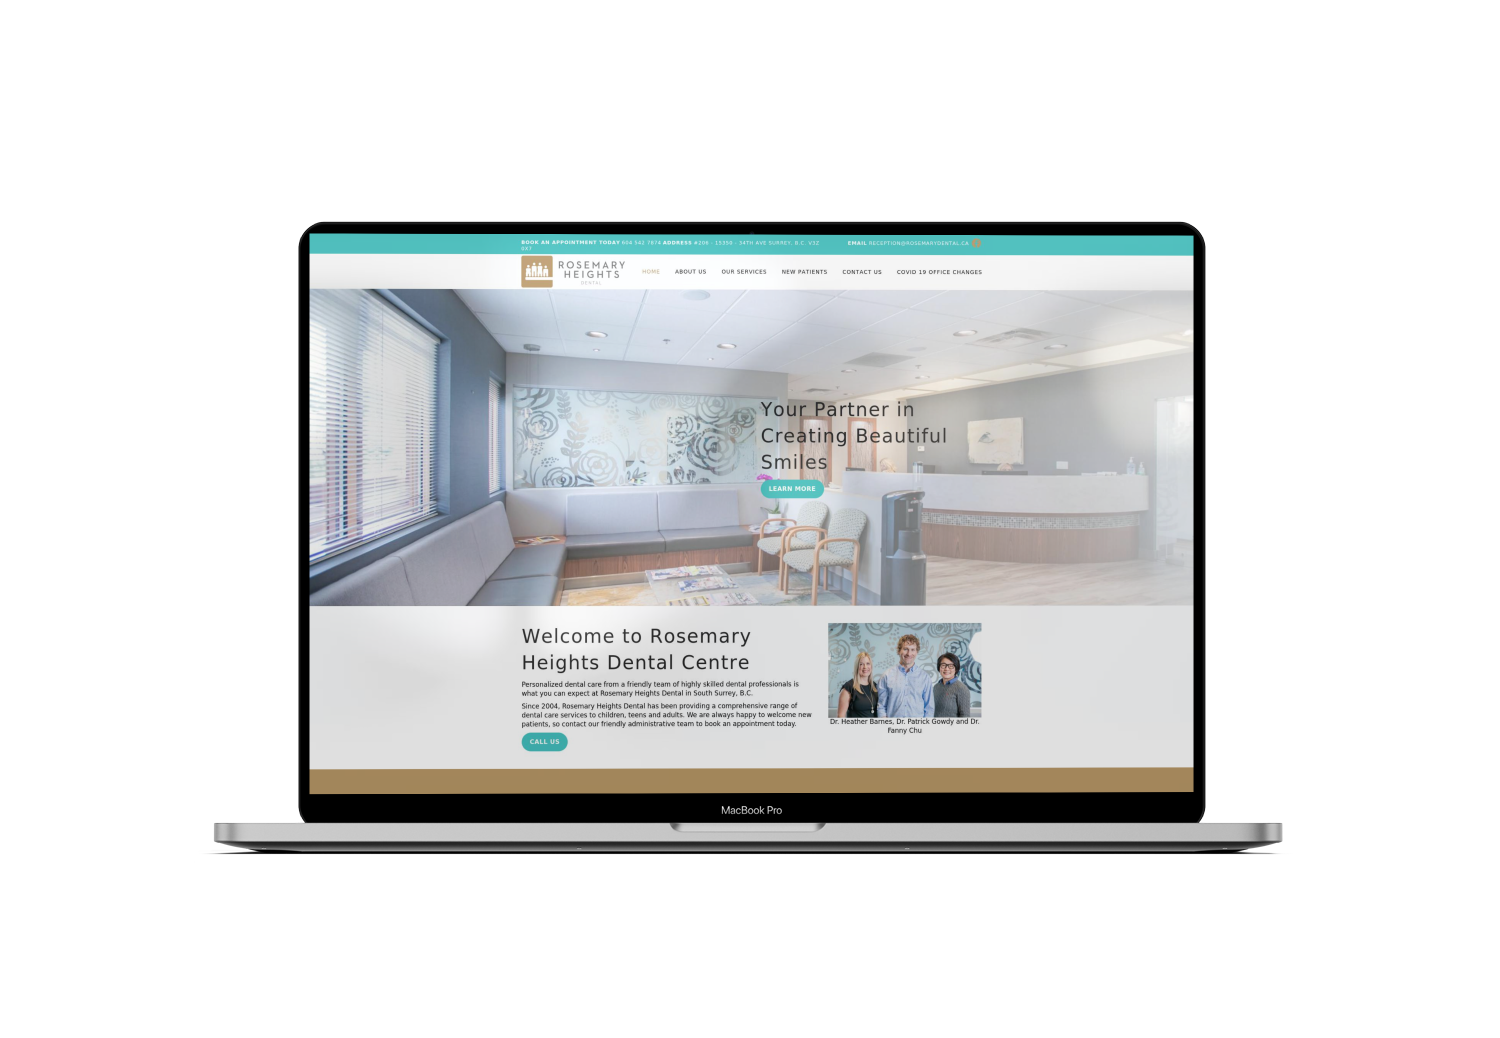 Mockup Mac Website Design for Real Estate Agency